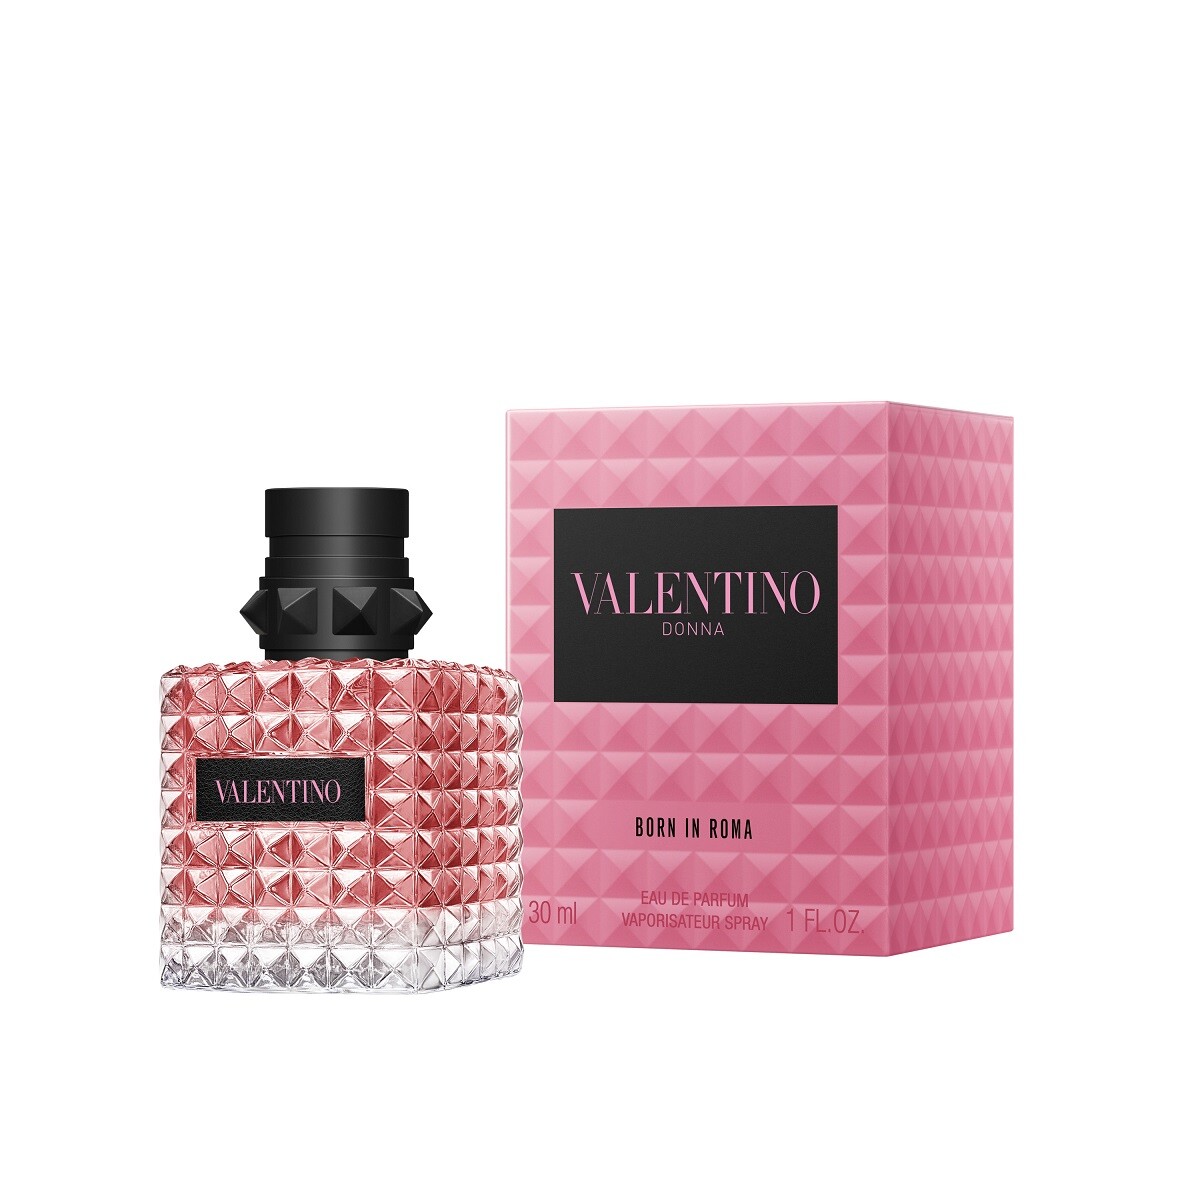 Perfume Valentino Donna Born In Roma Edp 30 Ml. 